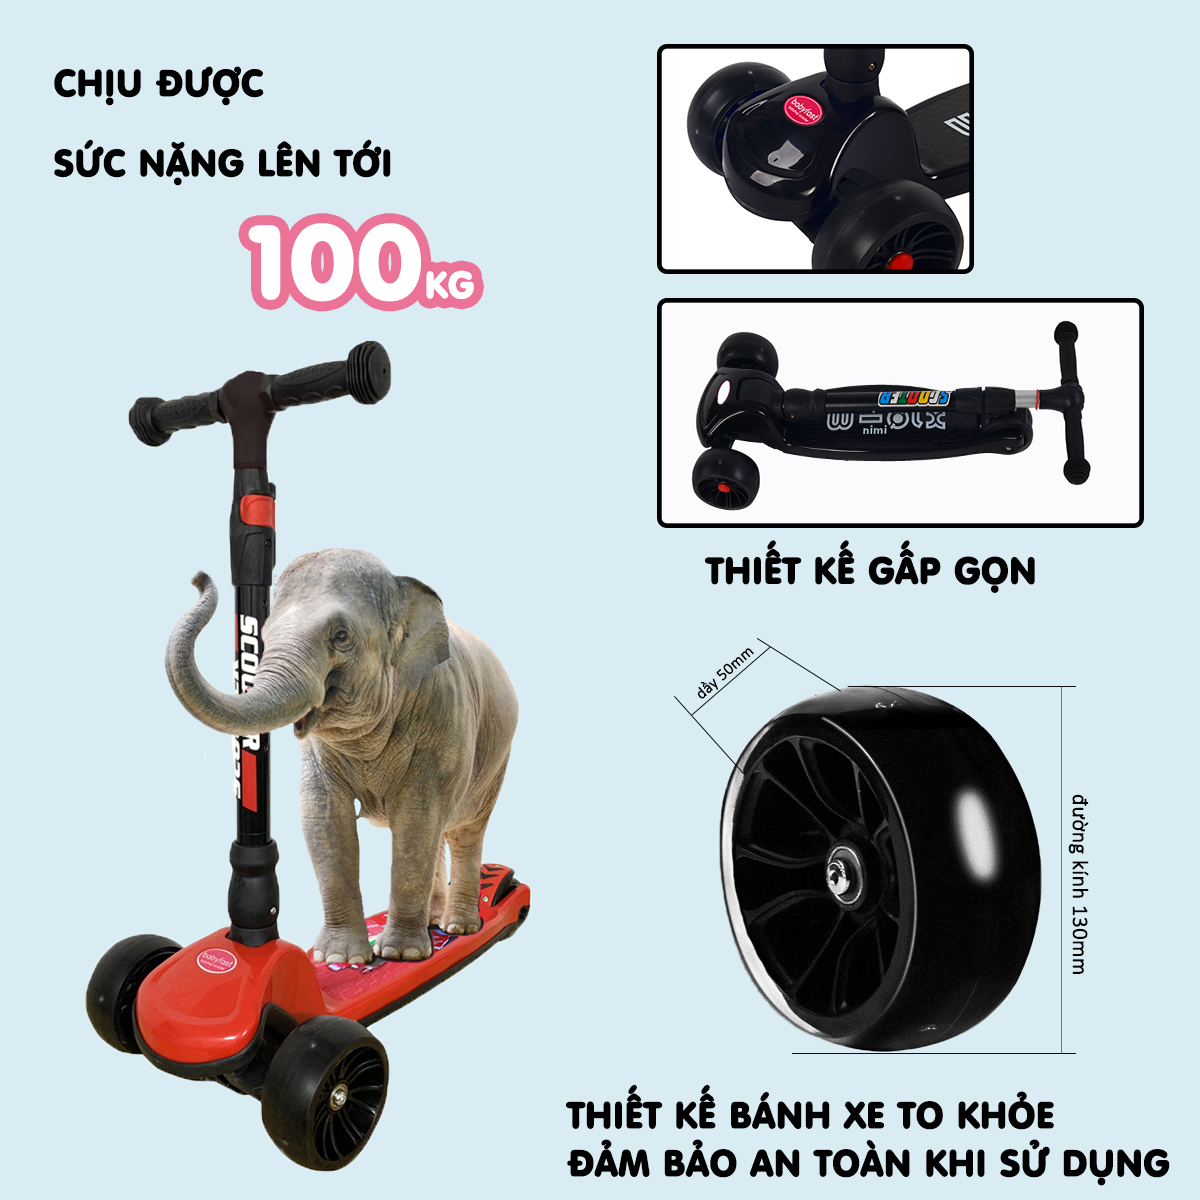 Xe trượt scooter Babyfast 3 bánh an toàn cho trẻ em của Babyhop chịu lực 100kg phù hợp cho cả bé trai và gái, bánh xe phát sáng vĩnh cửu, rèn luyện vận động, tăng chiều cao cho bé - Hàng chính hãng